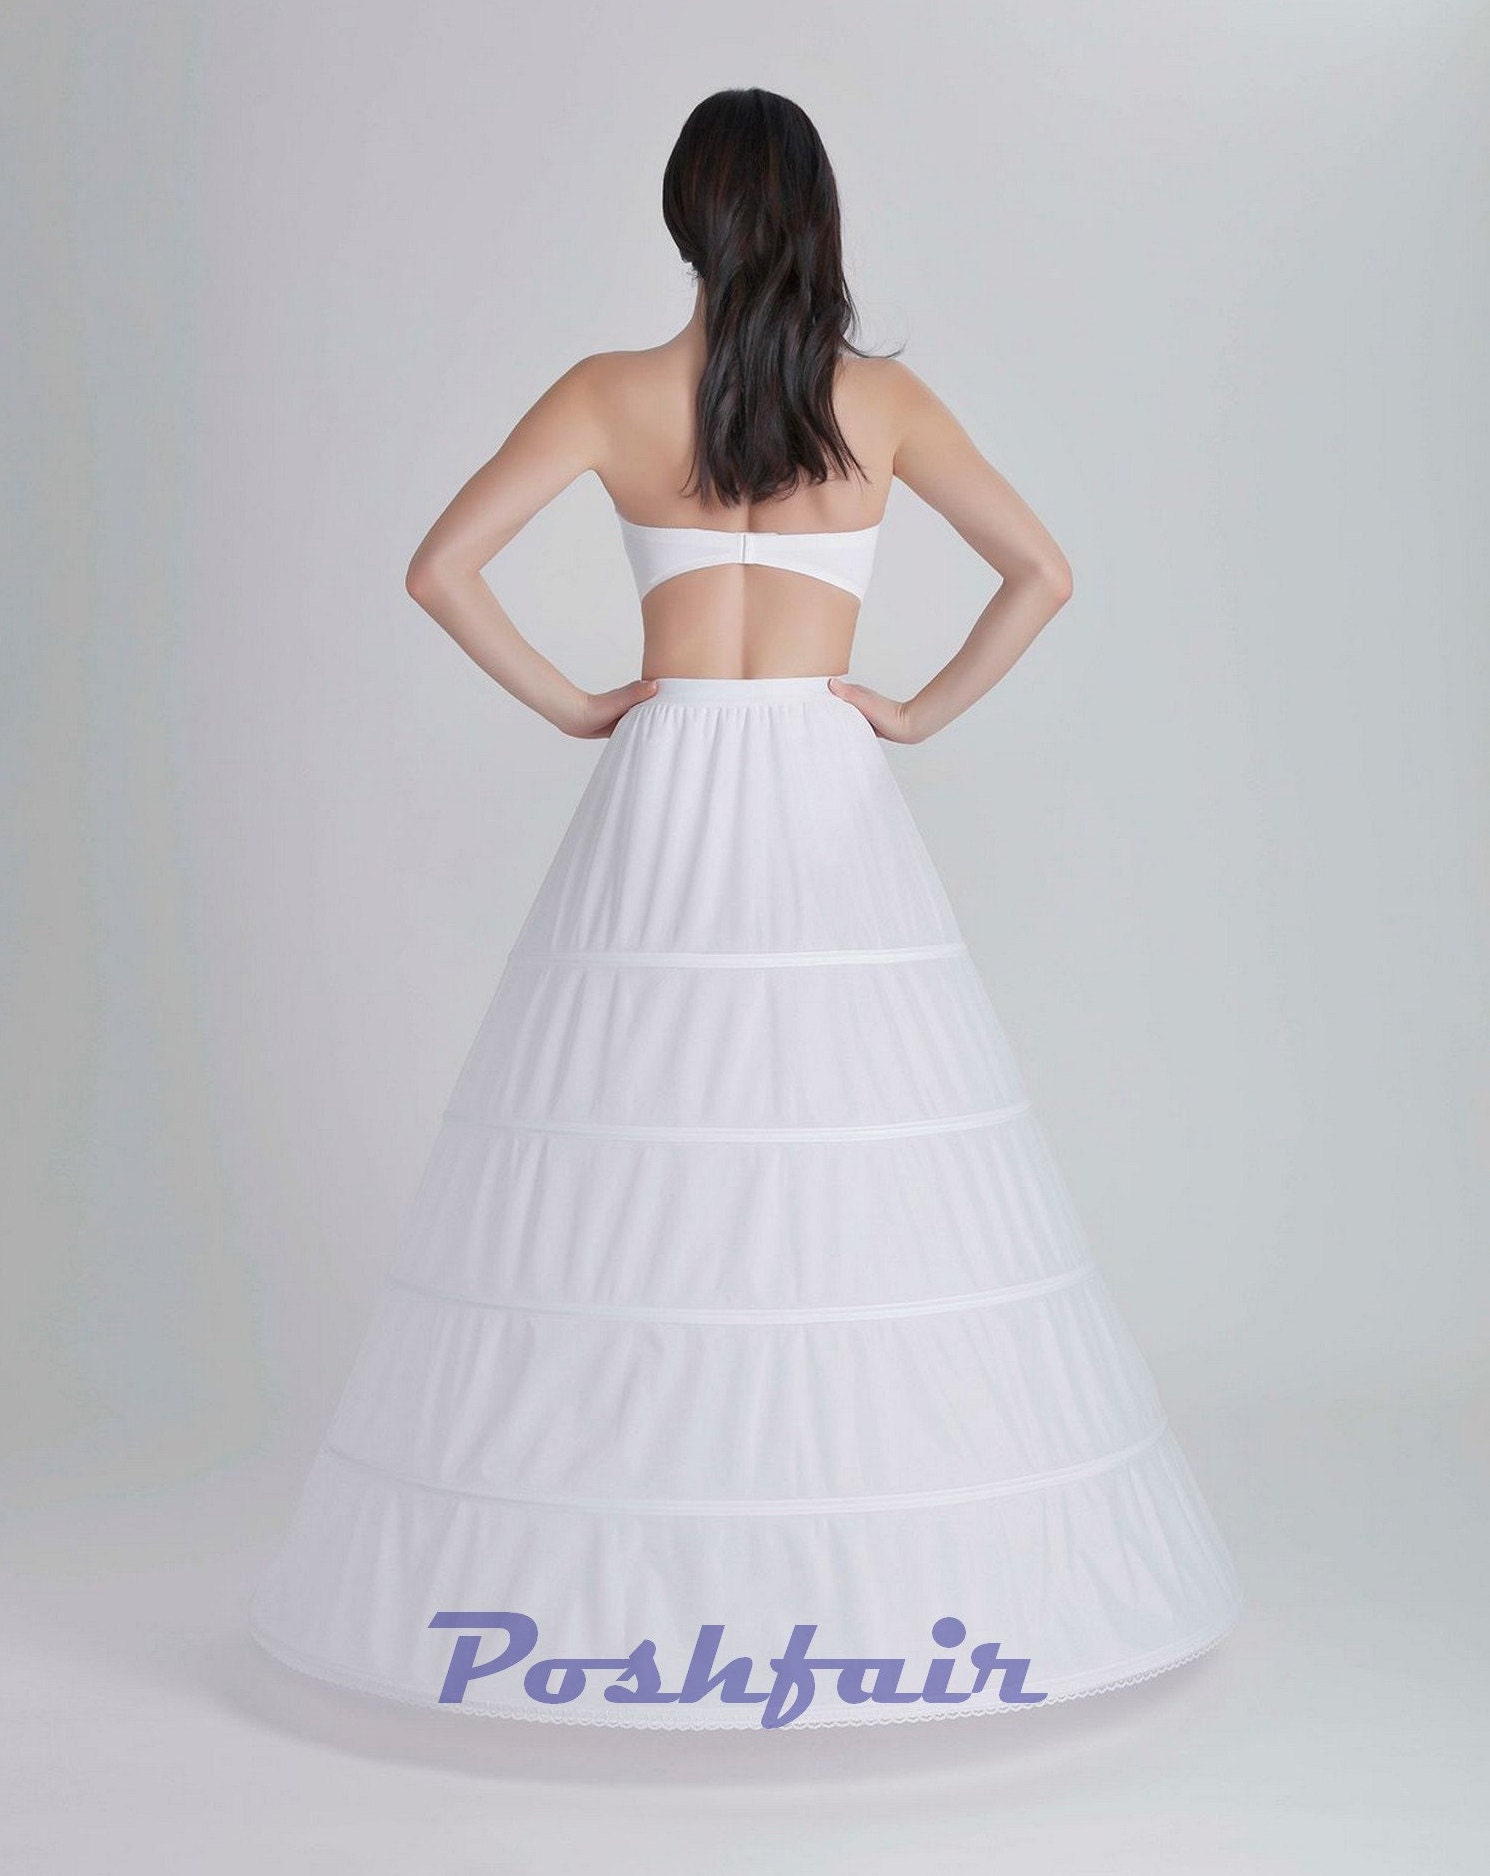 Mädchen Kinder Unterrock Hochzeit Krinoline Petticoat für Kleid 